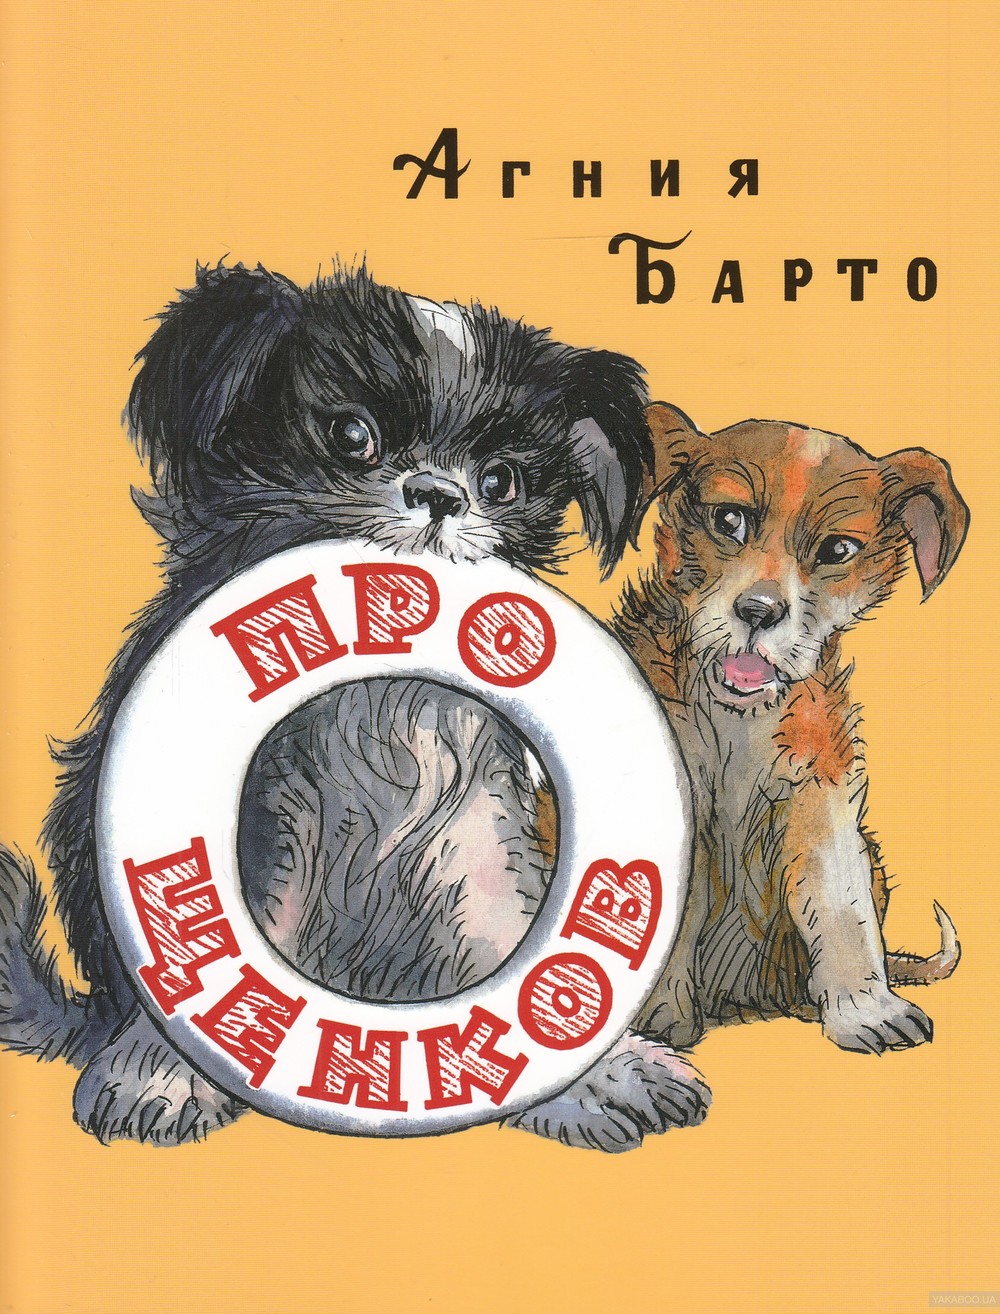 아이들을 위한 개에 관한 책 - 아이들에게 추천할만한 책들!